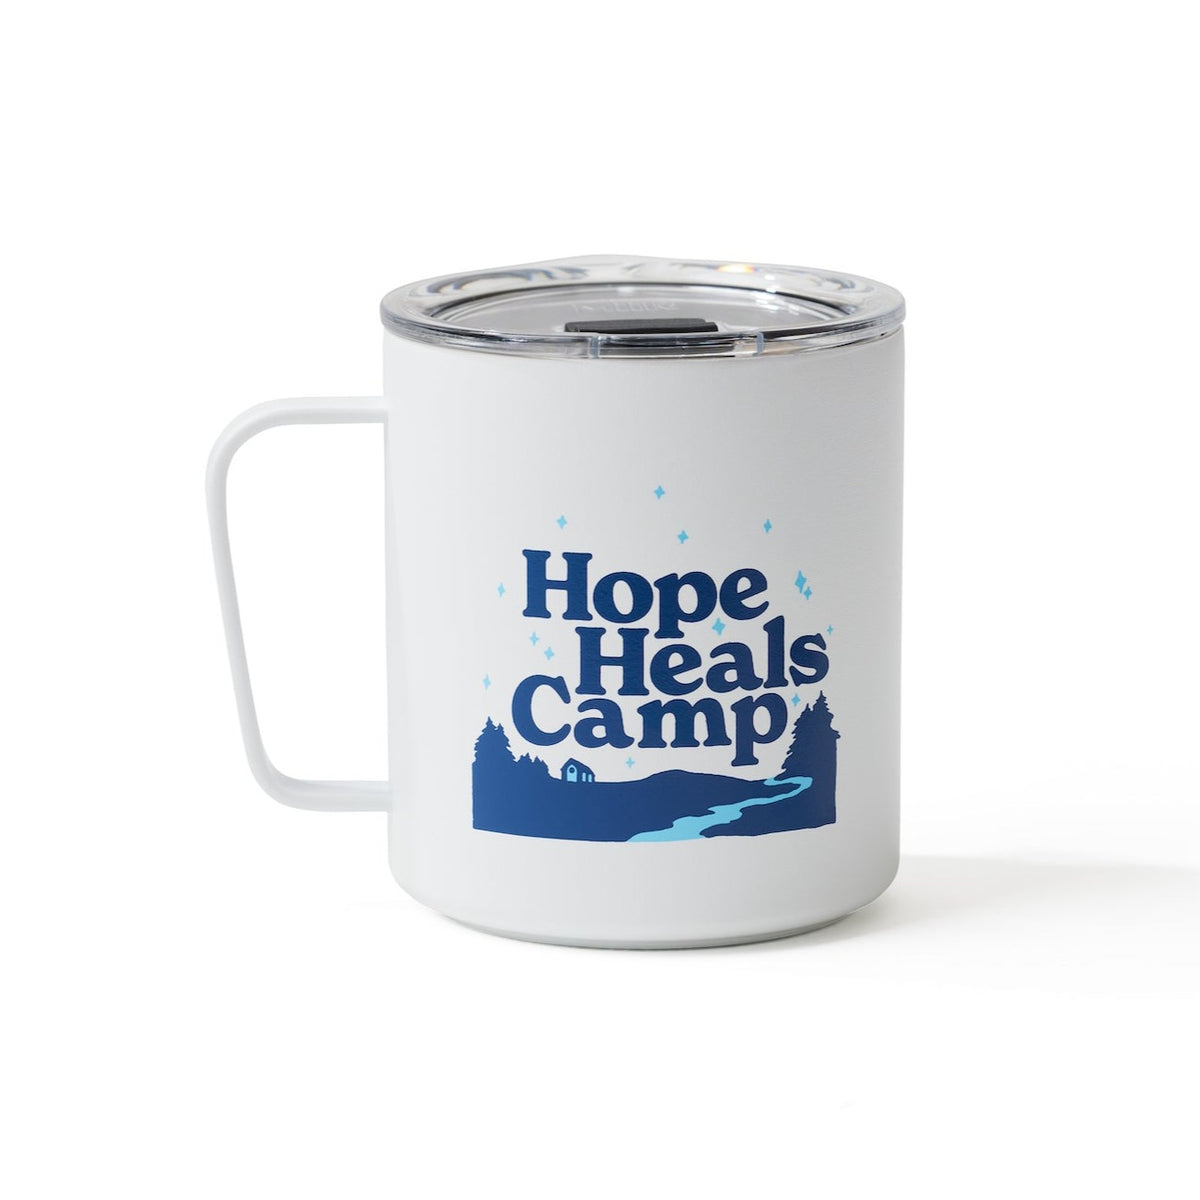 Camp Mug